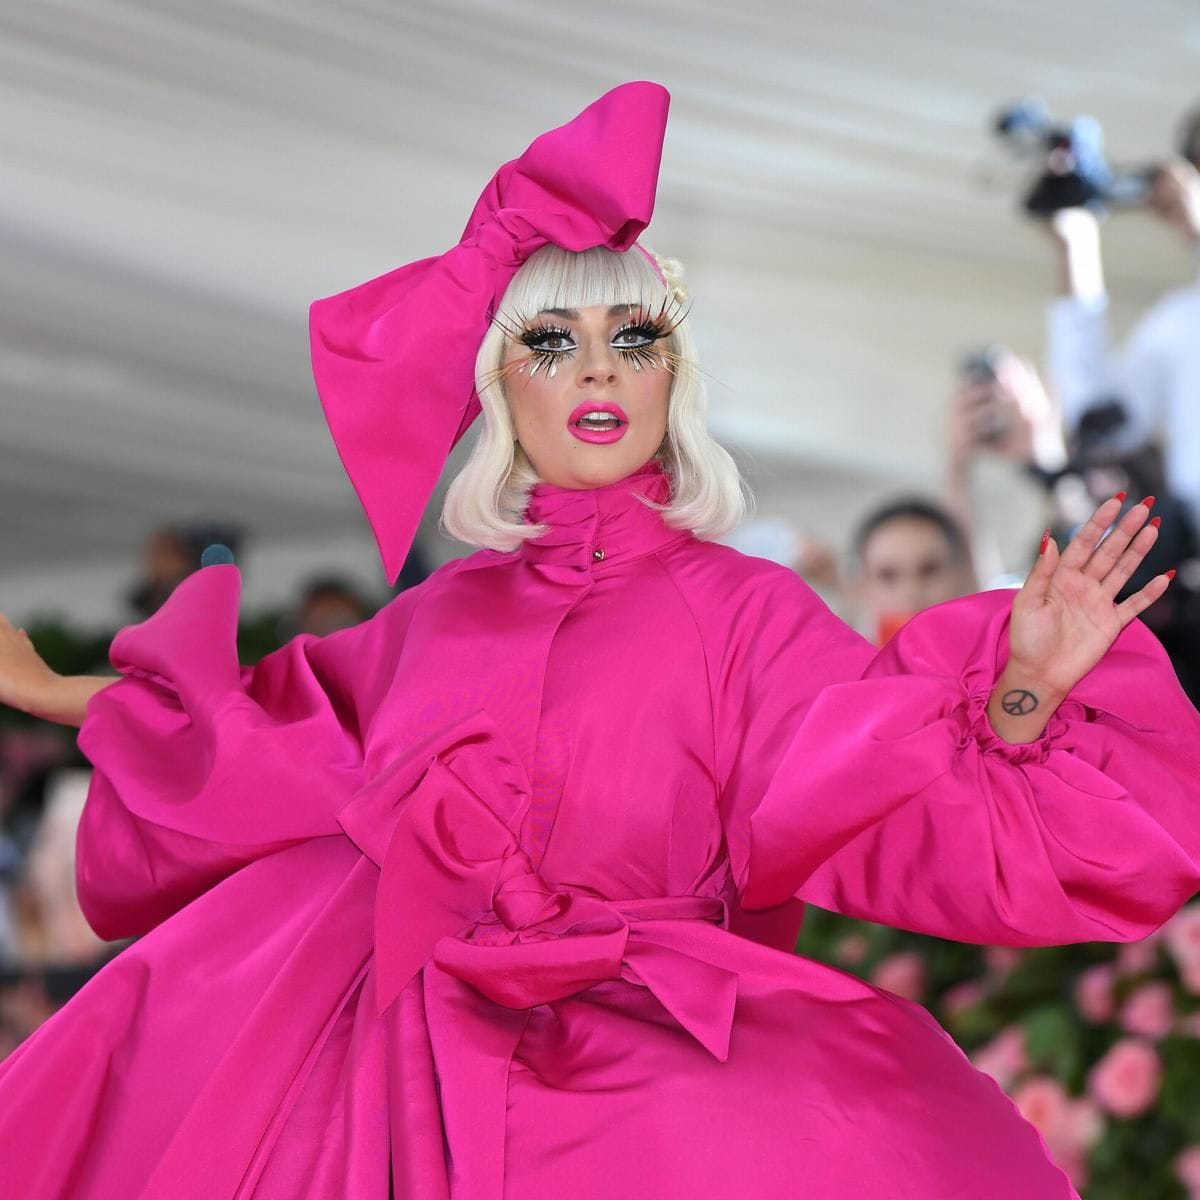 Lady Gaga walking the red carpet of the 2019 Met Gala